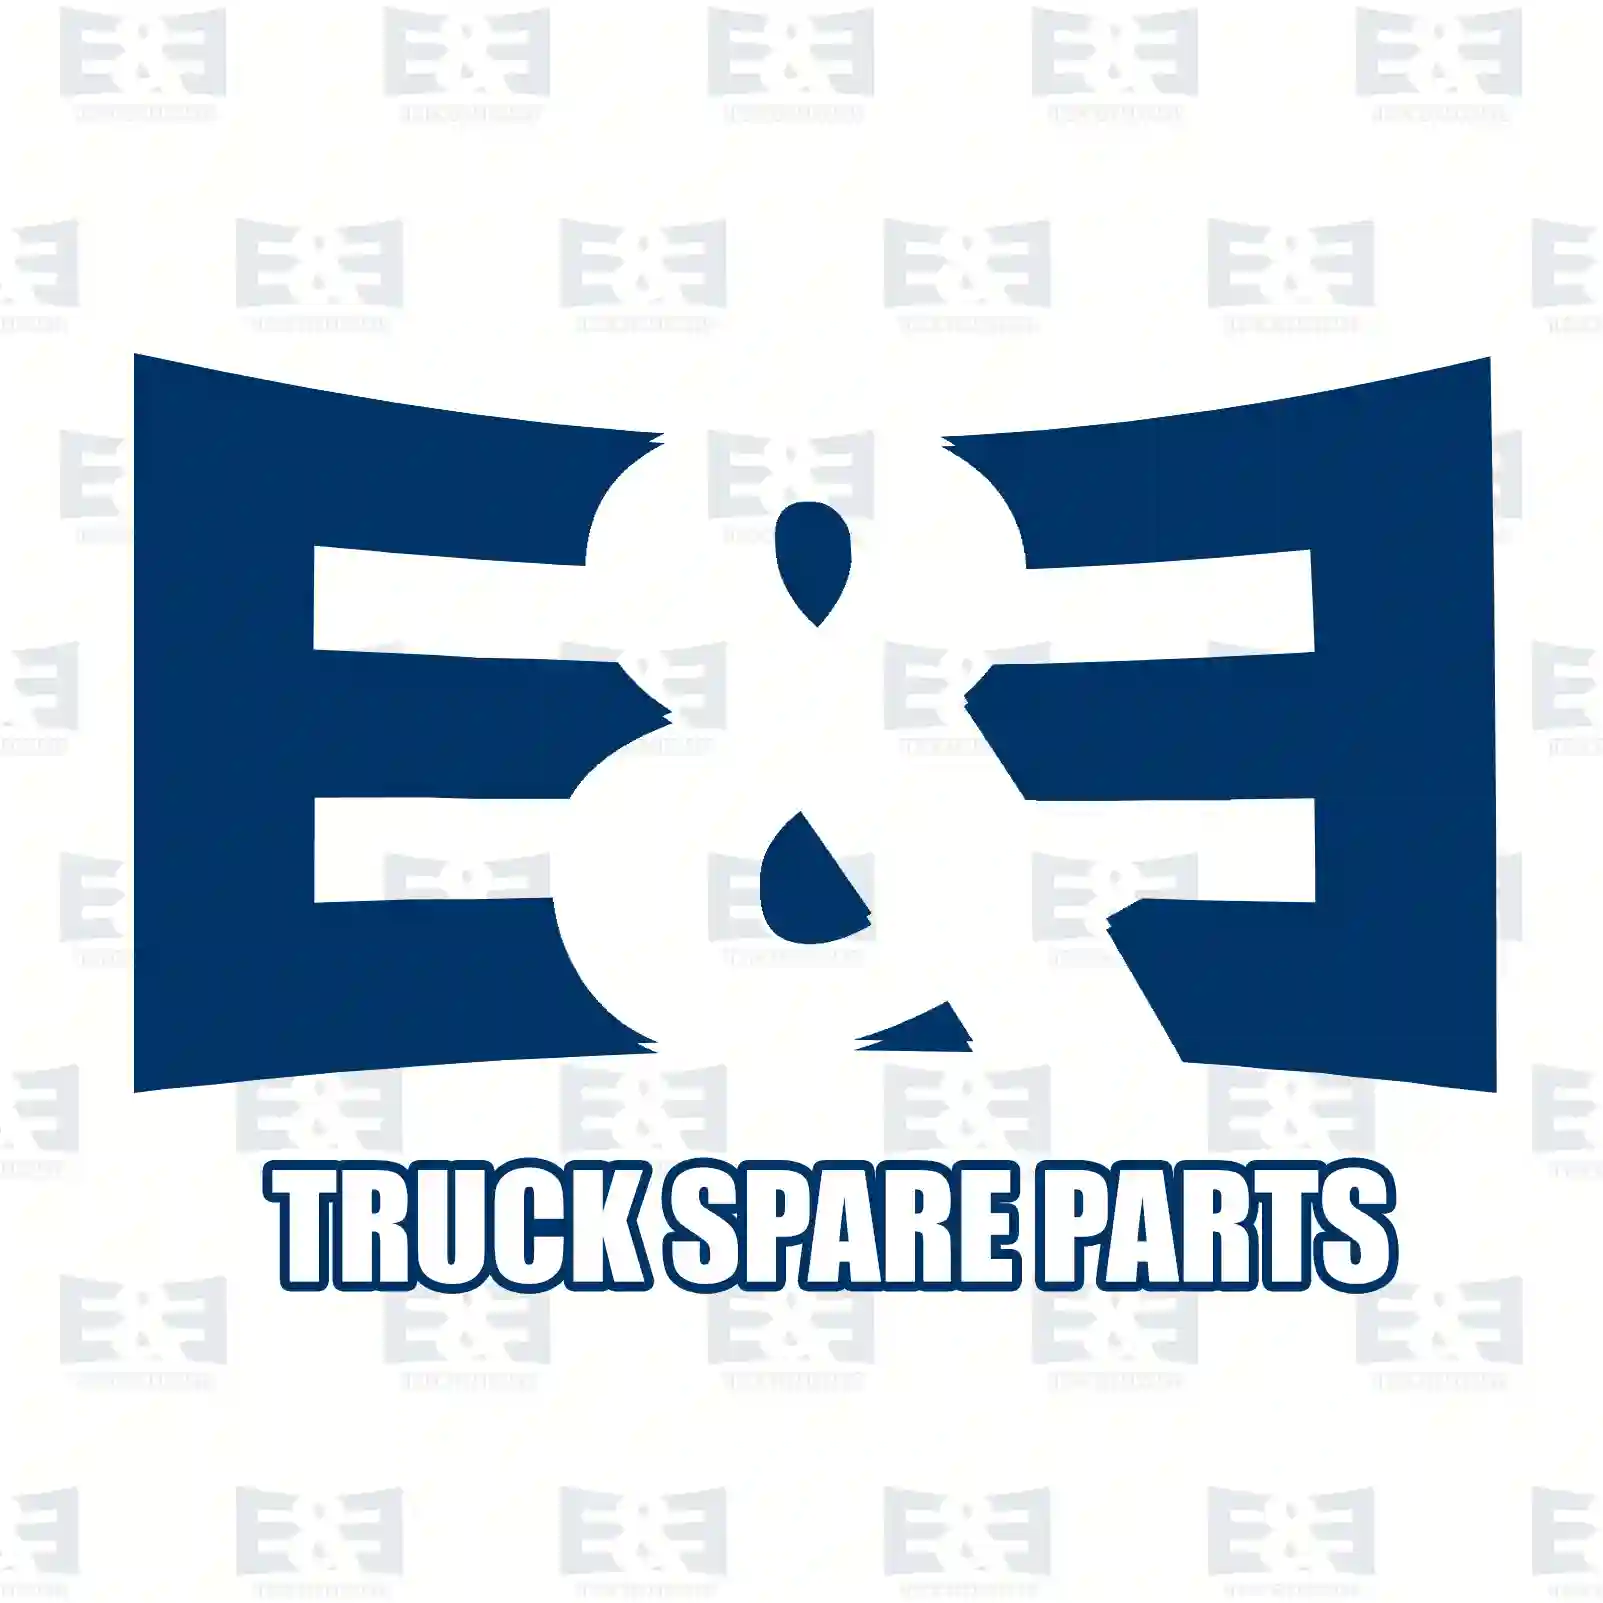 Gear shift rod, 2E2277288, 1380745, 1414101, 1423786, 1428073, 1515117, ZG30545-0008 ||  2E2277288 E&E Truck Spare Parts | Truck Spare Parts, Auotomotive Spare Parts Gear shift rod, 2E2277288, 1380745, 1414101, 1423786, 1428073, 1515117, ZG30545-0008 ||  2E2277288 E&E Truck Spare Parts | Truck Spare Parts, Auotomotive Spare Parts